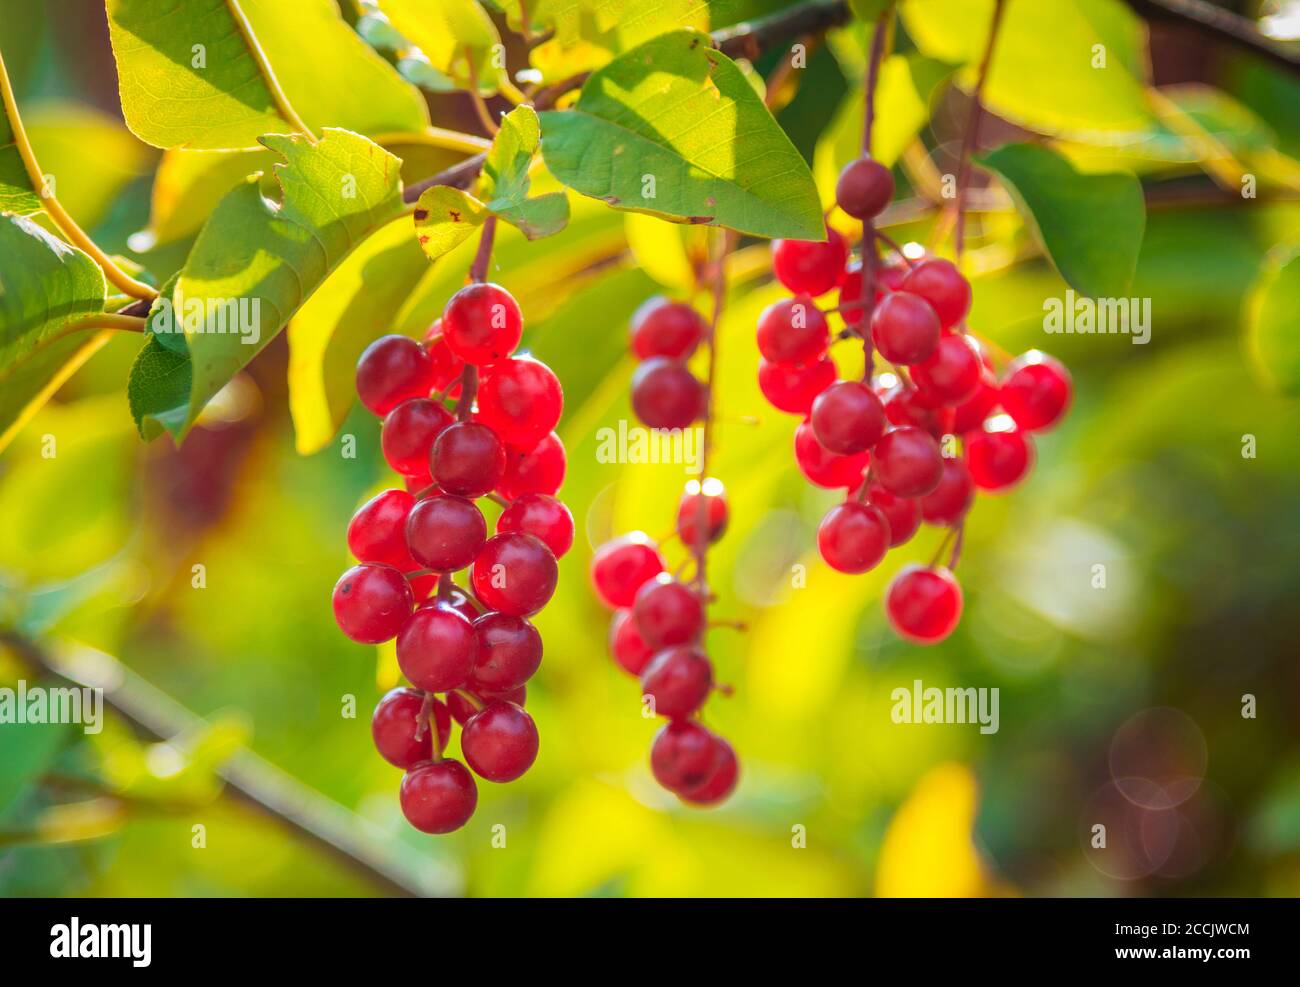 Nahaufnahme reife leuchtend rote Beeren von Prunusvirginiana, genannt Bitterbeere, Chokecherry Baum. Stockfoto